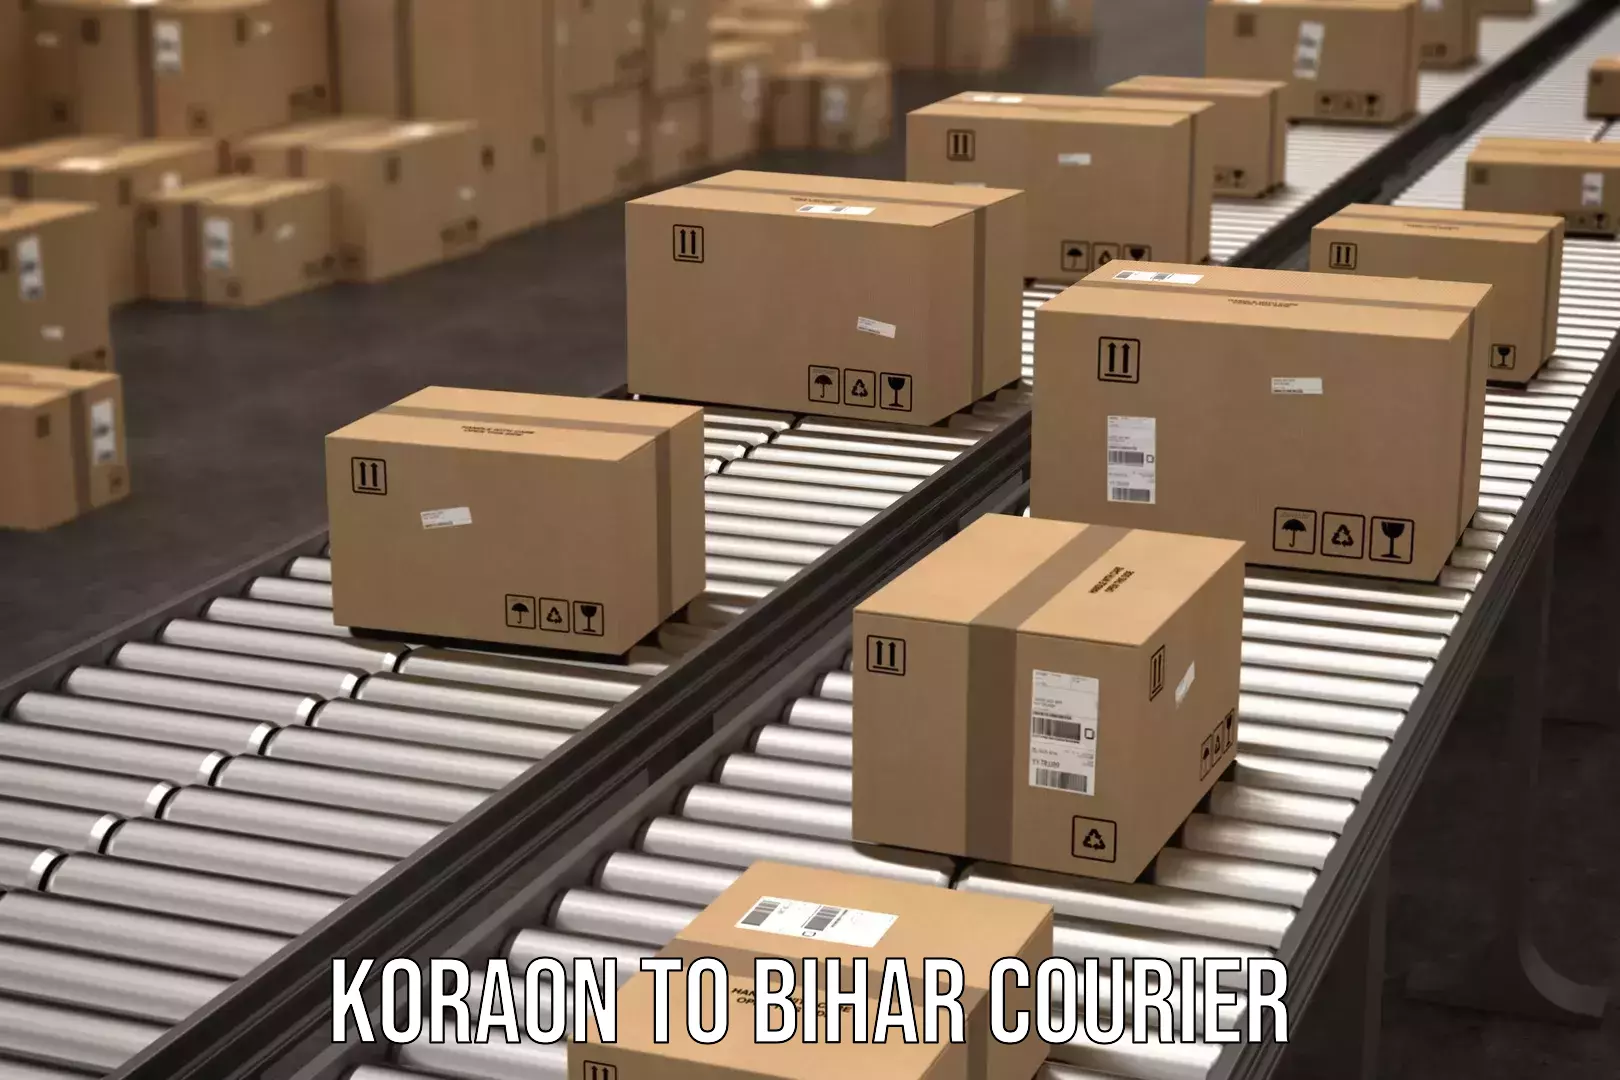 Global freight services Koraon to Mohania